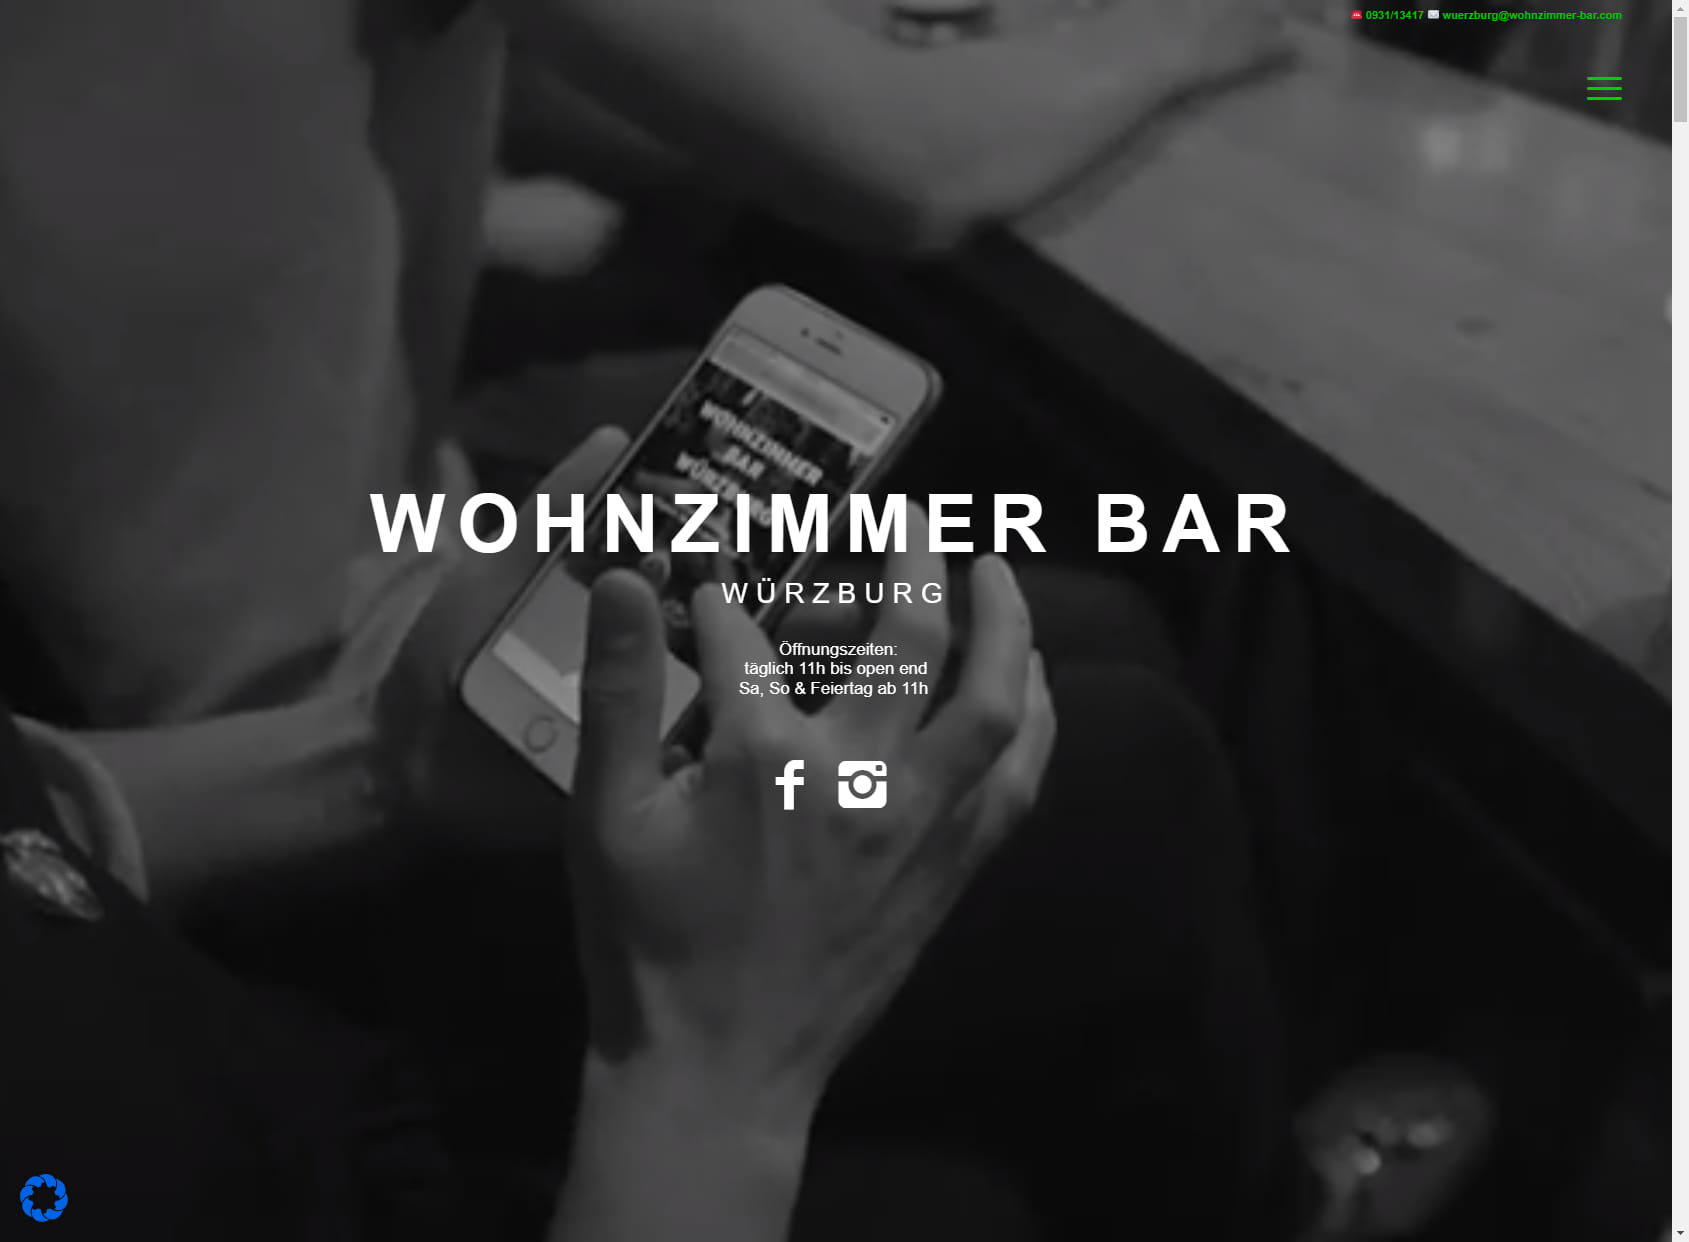 Wohnzimmer Bar Würzburg